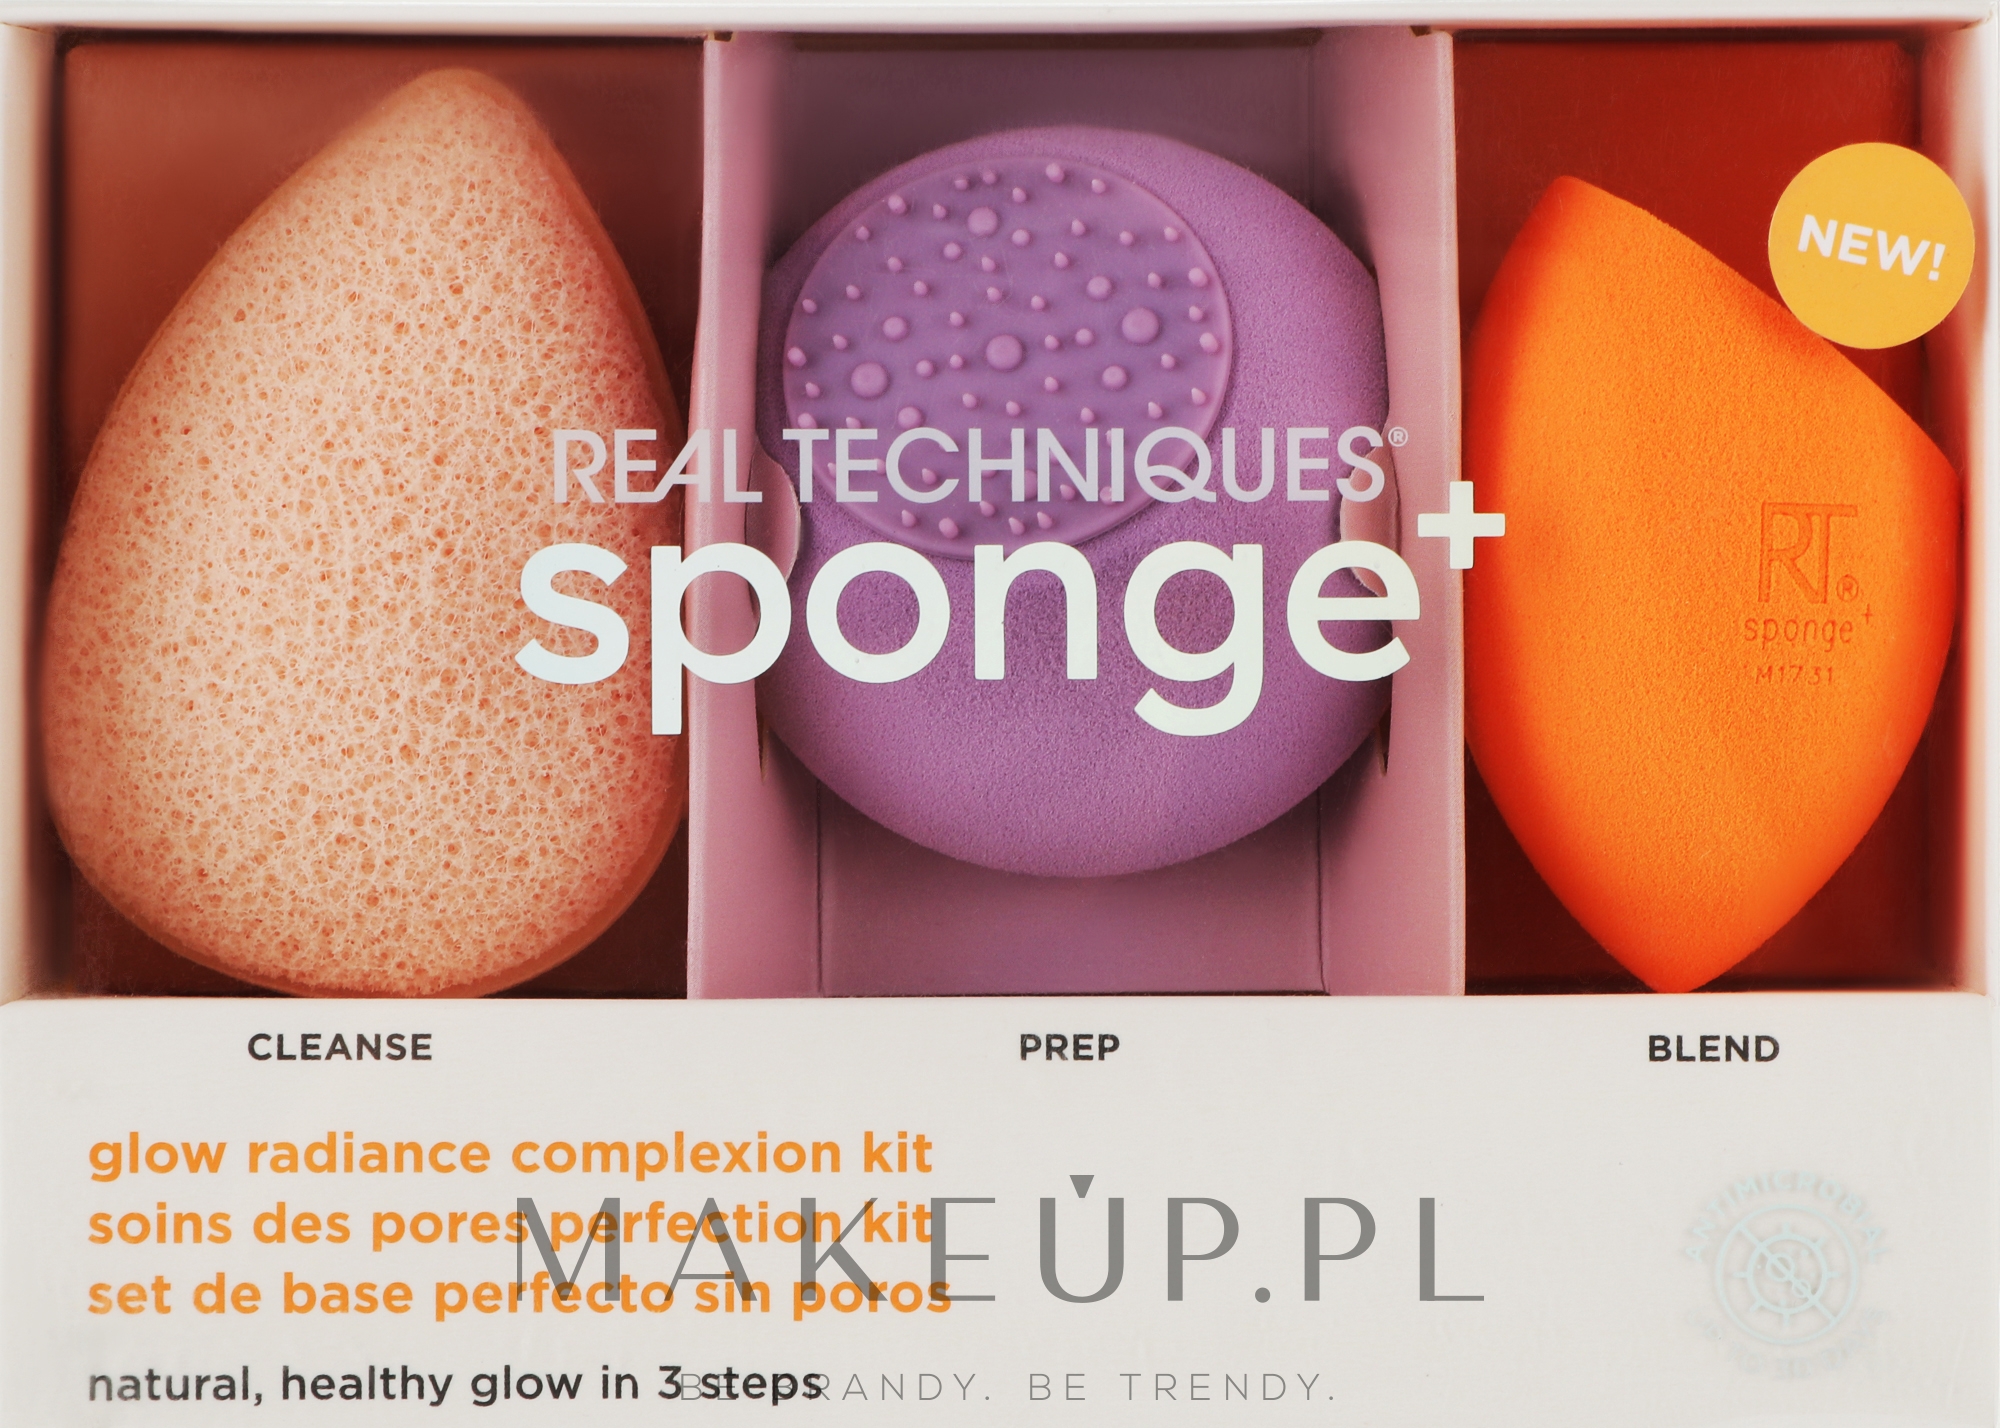 Zestaw gąbeczek do makijażu Sponge+, 3 szt. - Real Techniques Sponge Set Glow Radiance Complexion Kit — Zdjęcie 3 szt.